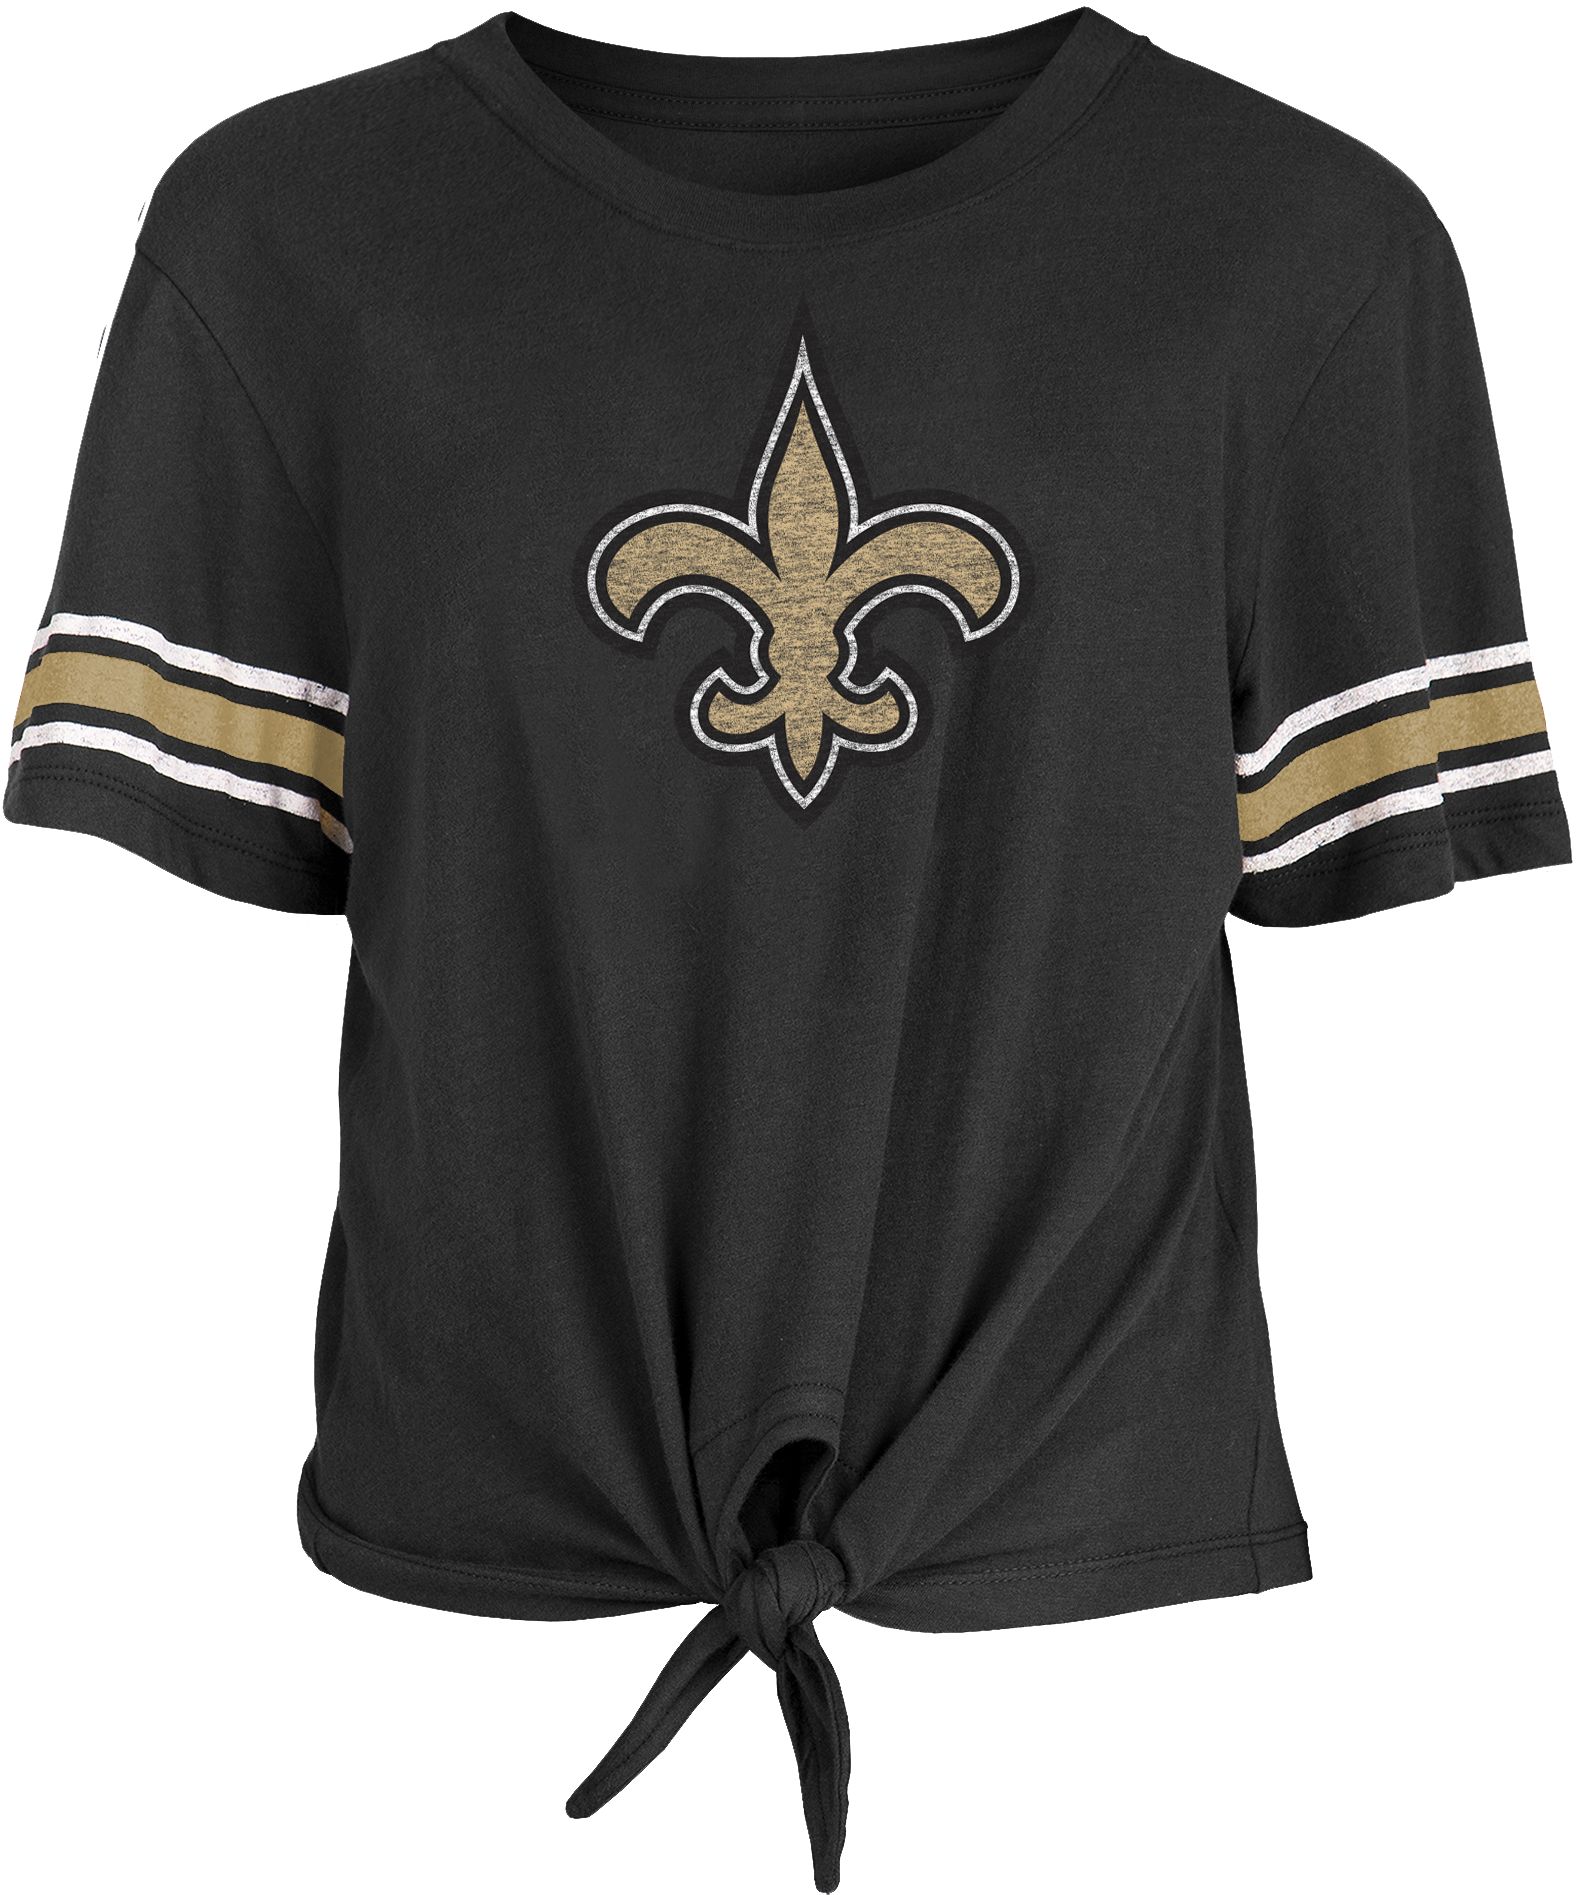 New Era / Women's New Orleans Saints Front Tie Black T-Shirt